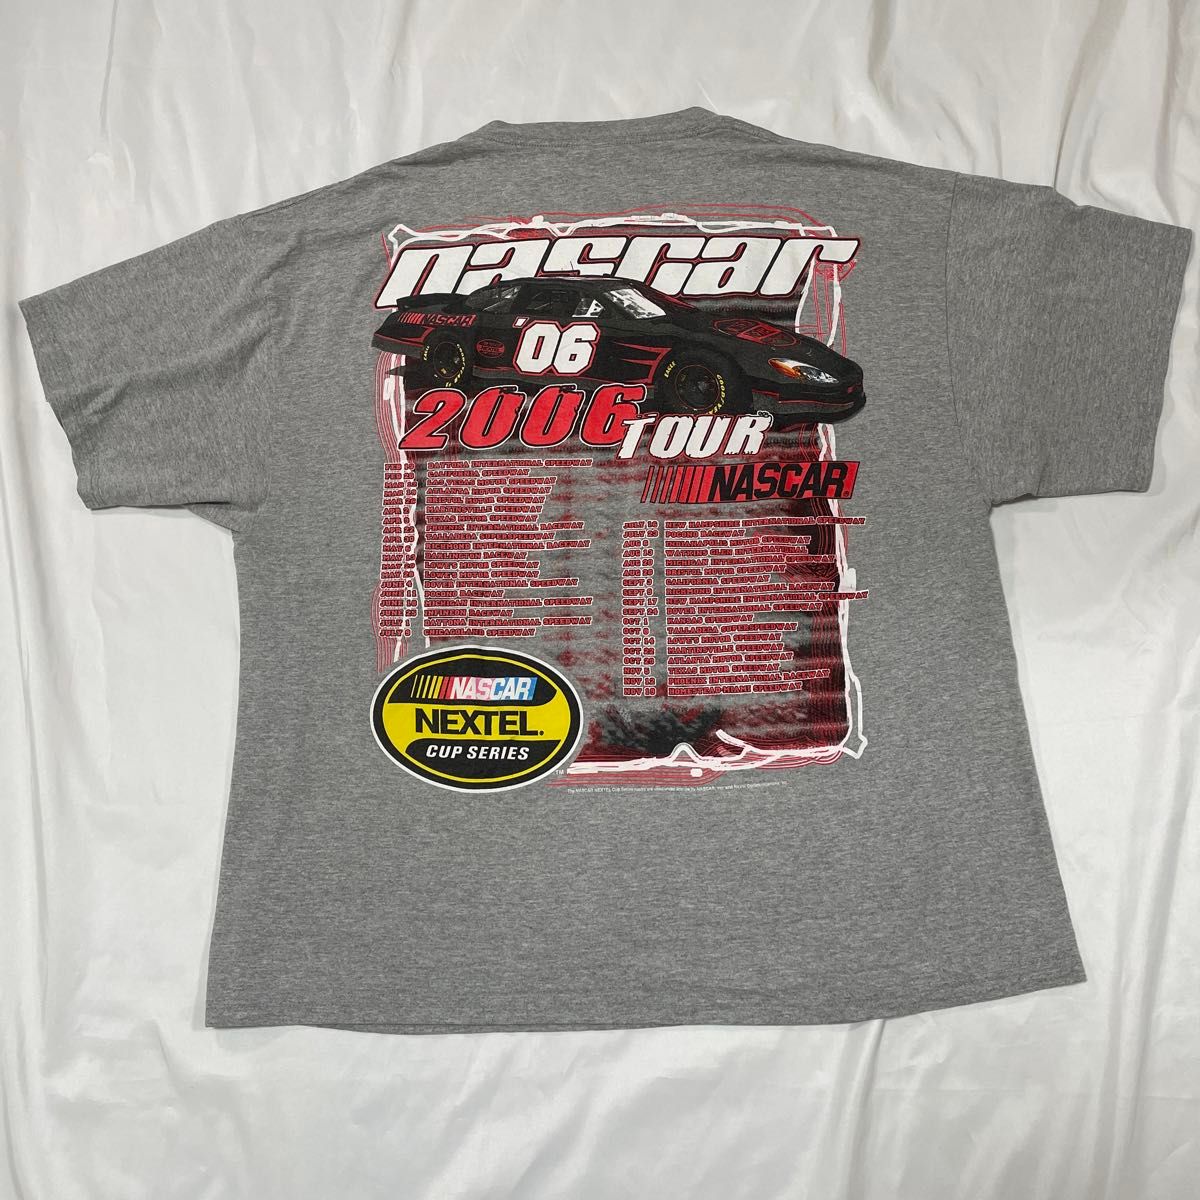 【2XL】NASCAR 2006 tour Tシャツ